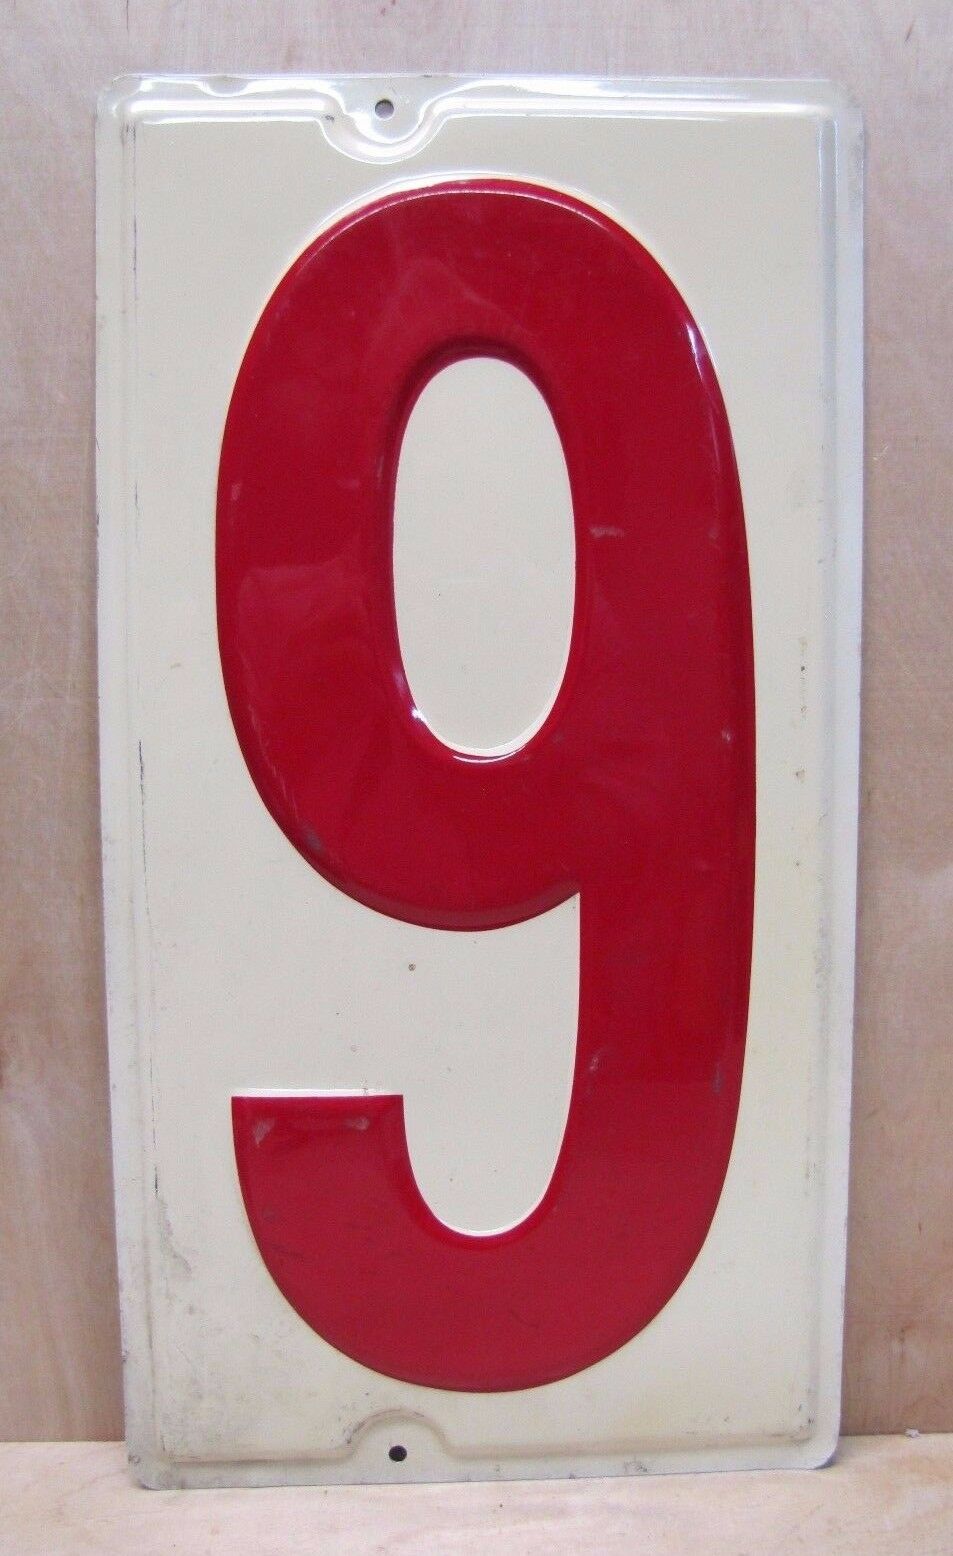 Gas Station Price # 9 Sign original vtg embossed large metal number nine six 9/6